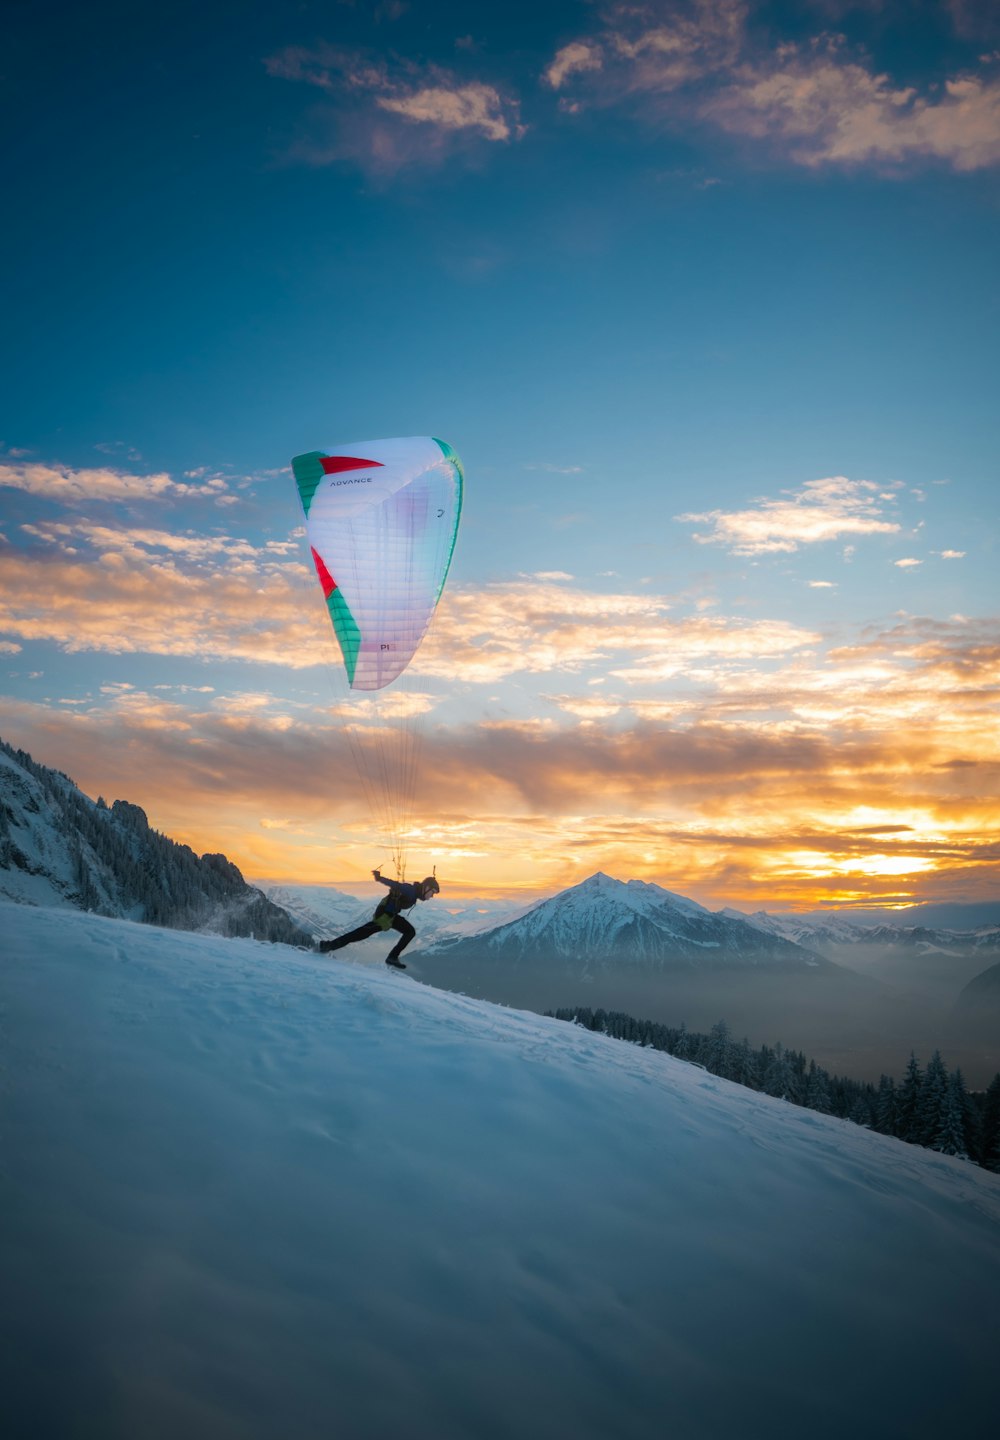 雪に覆われた丘の上で凧を飛ばす人